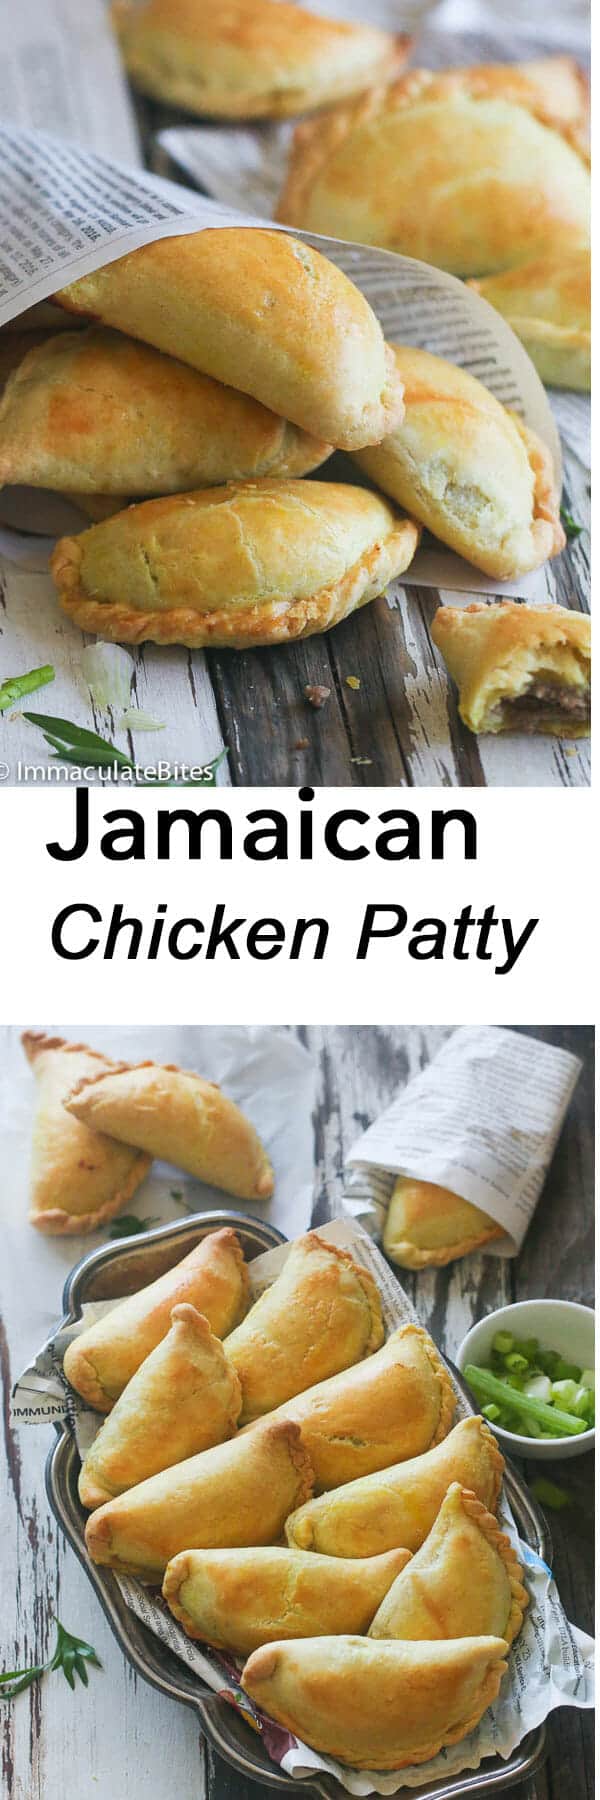 jamaican-chicken-patty